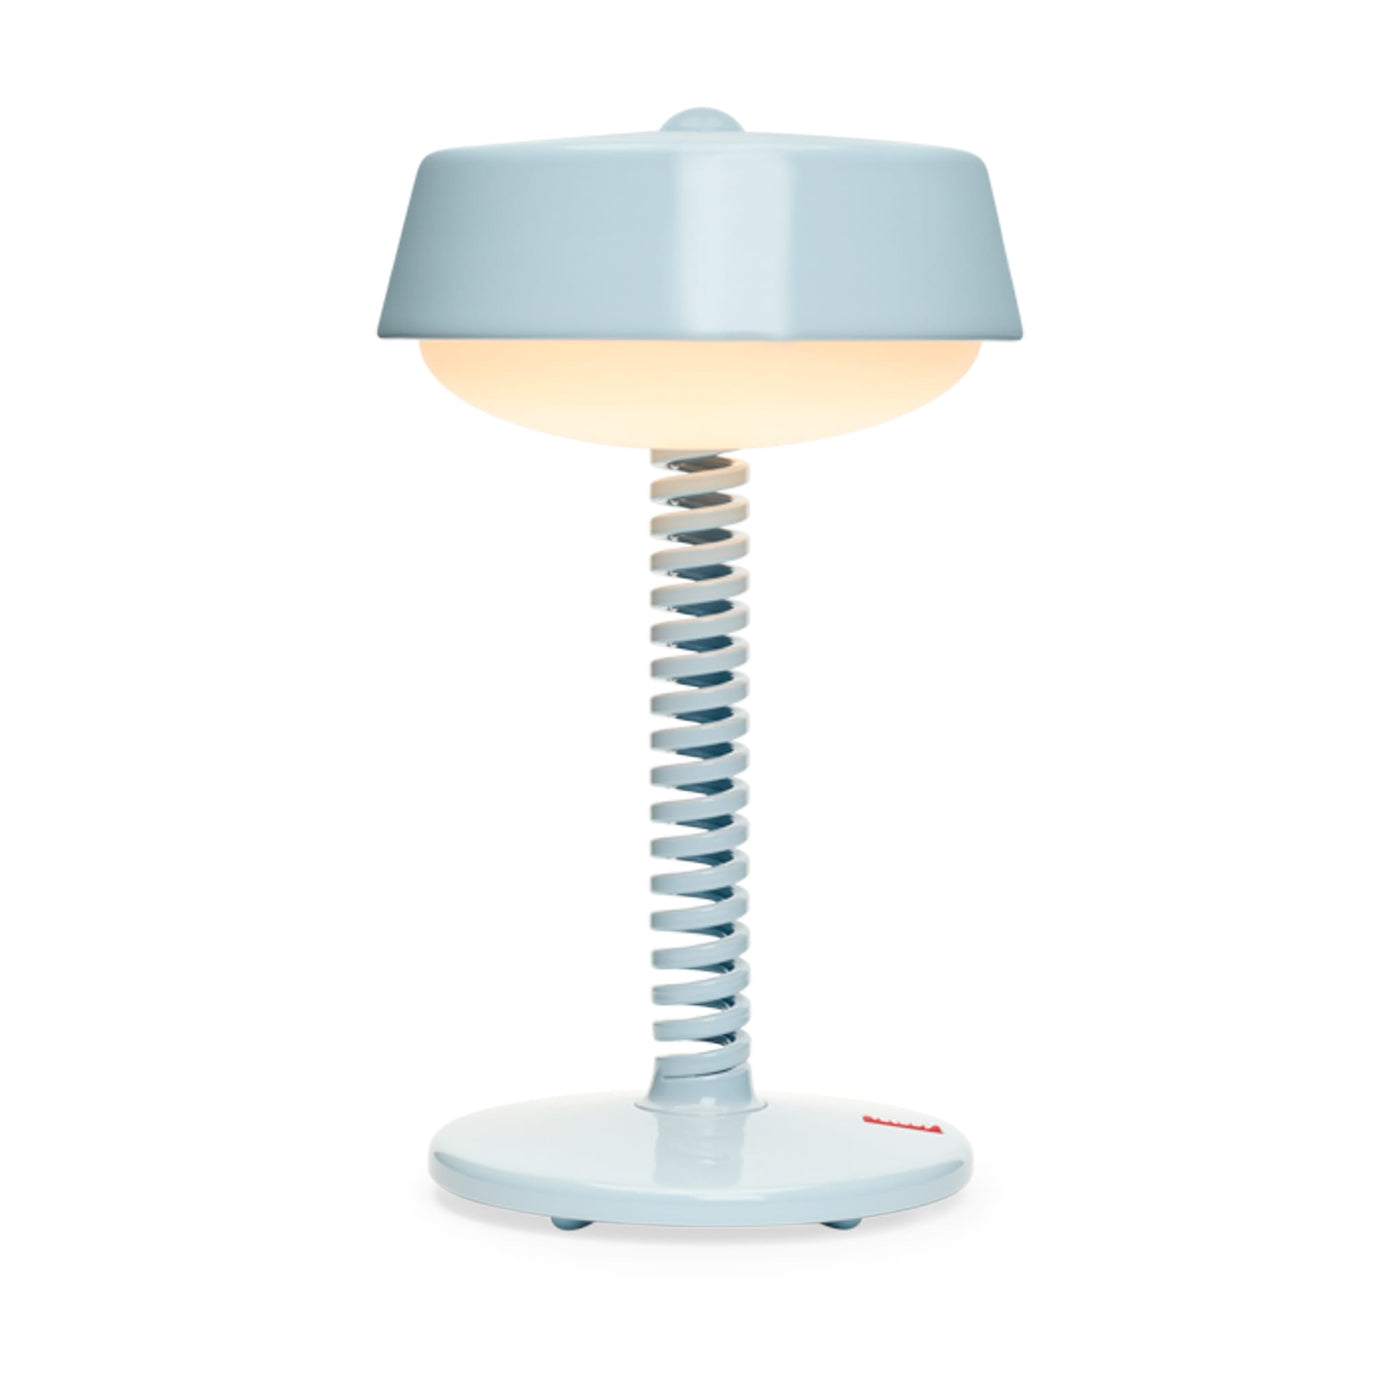 Découvrez Bellboy, la lampe de table sans fil de Fatboy. Design classique, éclairage LED réglable et bouton tactile pour une ambiance personnalisée.